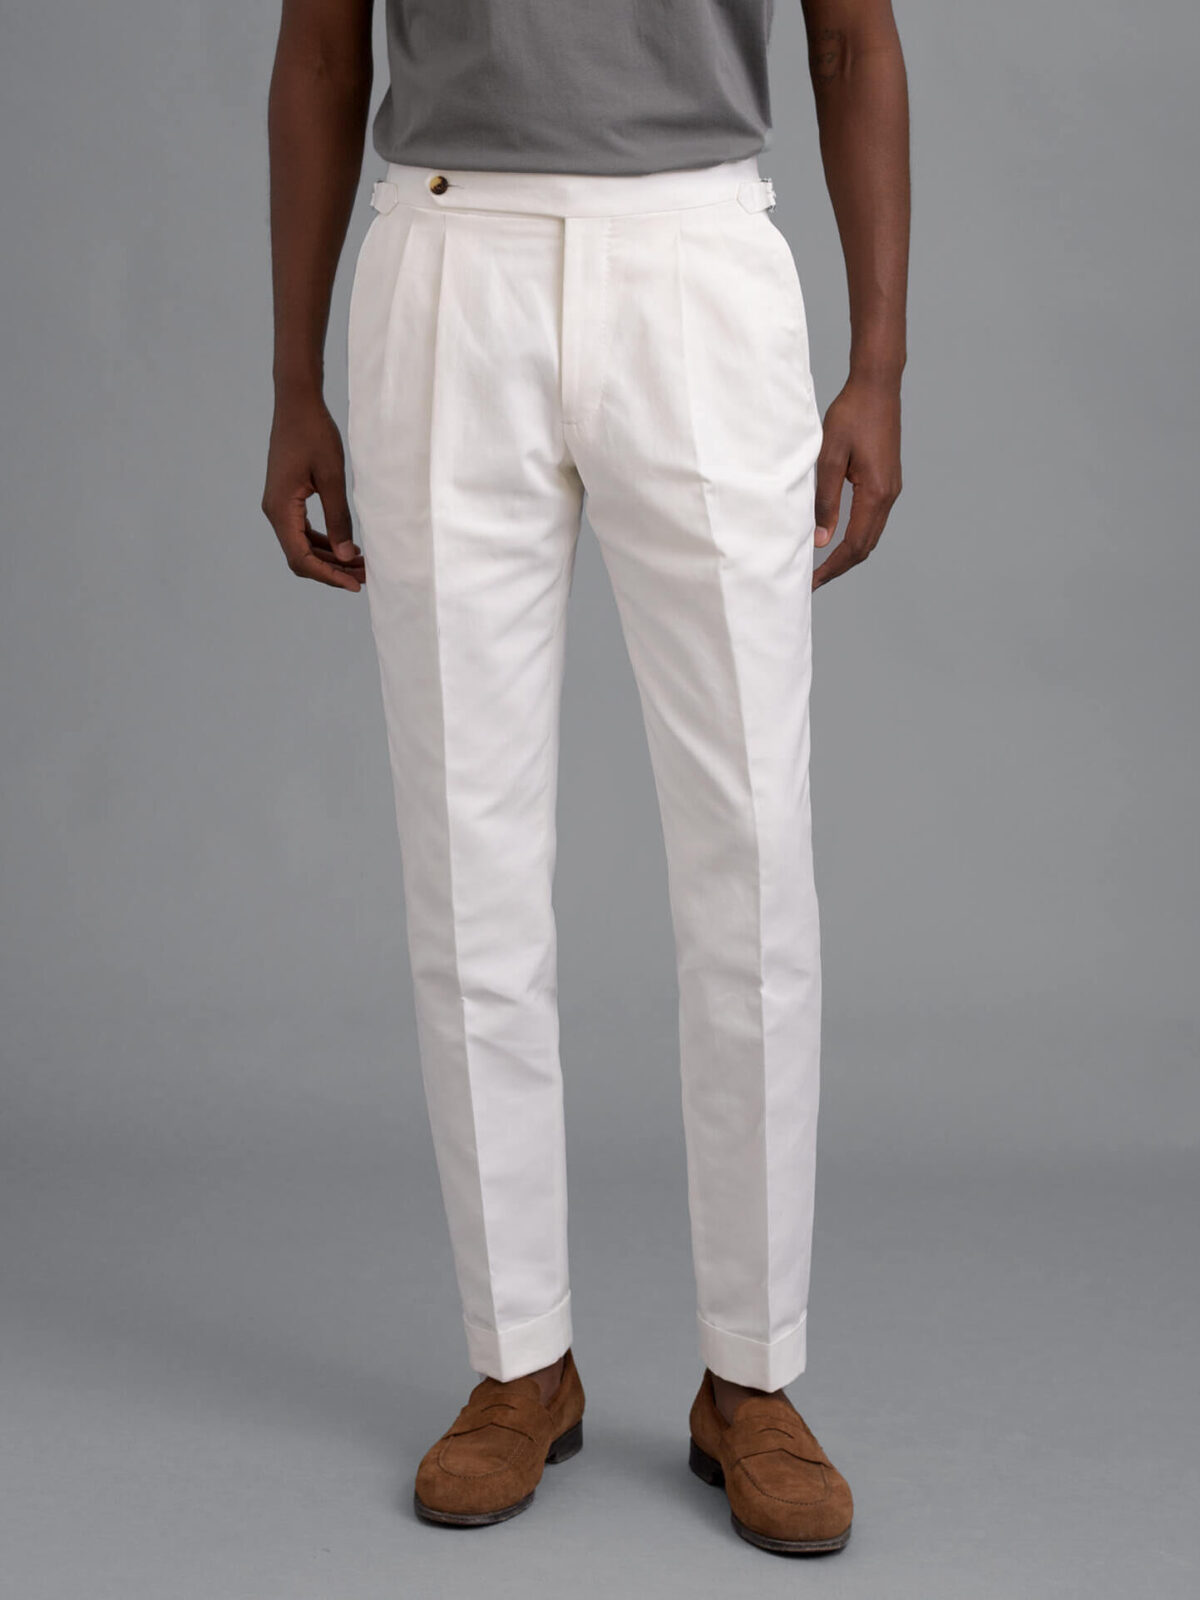 men’s white dress pants